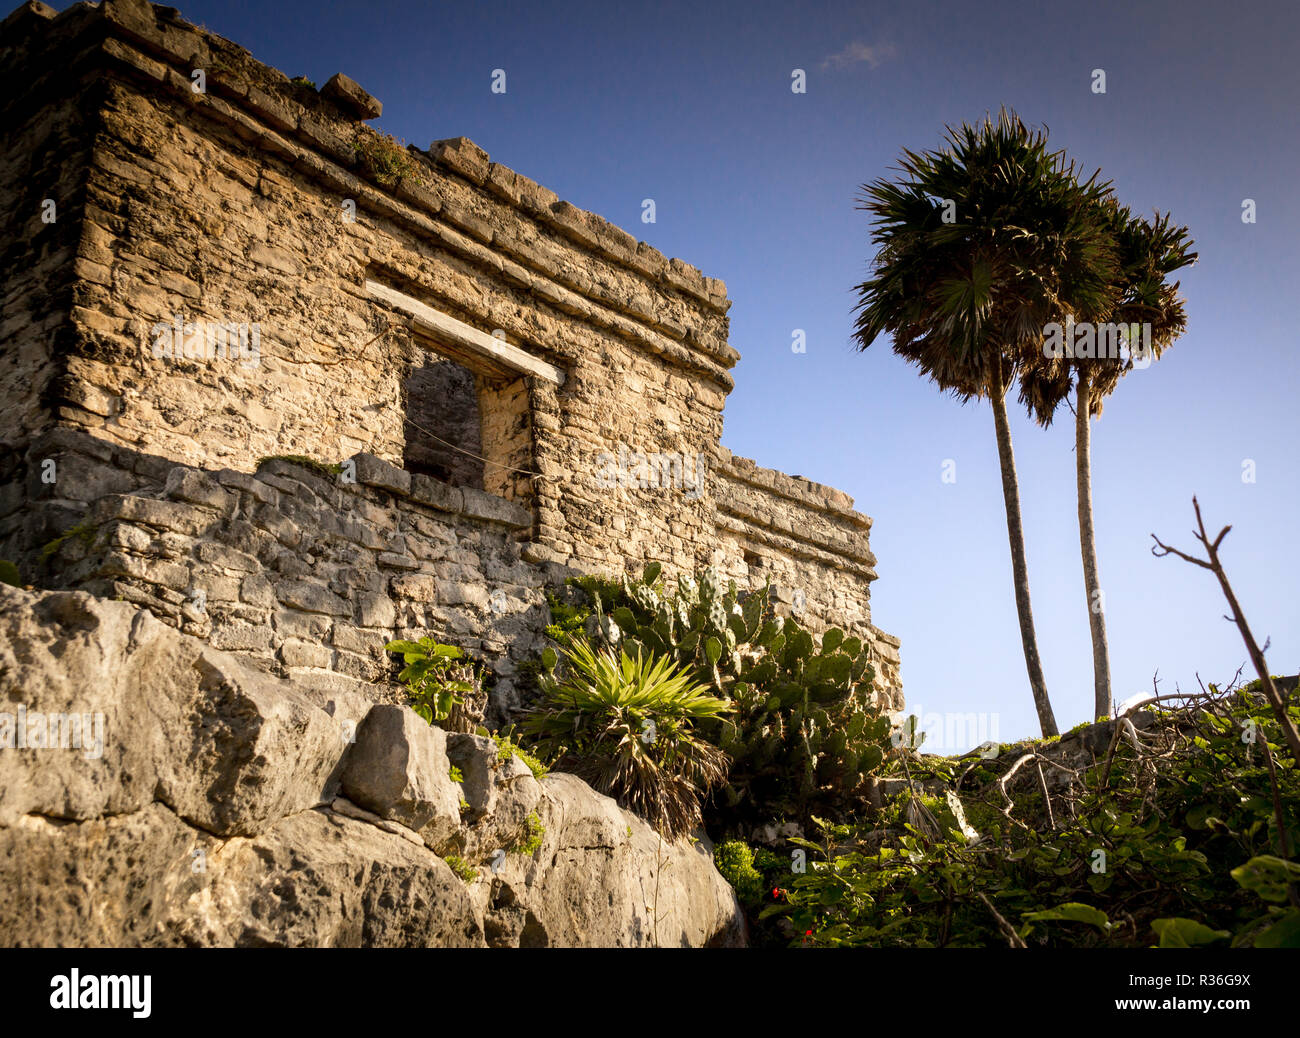 Le rovine maya di Tulum, Messico: le rovine di Tulum nello Yucatan sono adagiato tra palme e situato sulla costa del Mar dei Caraibi. Foto Stock